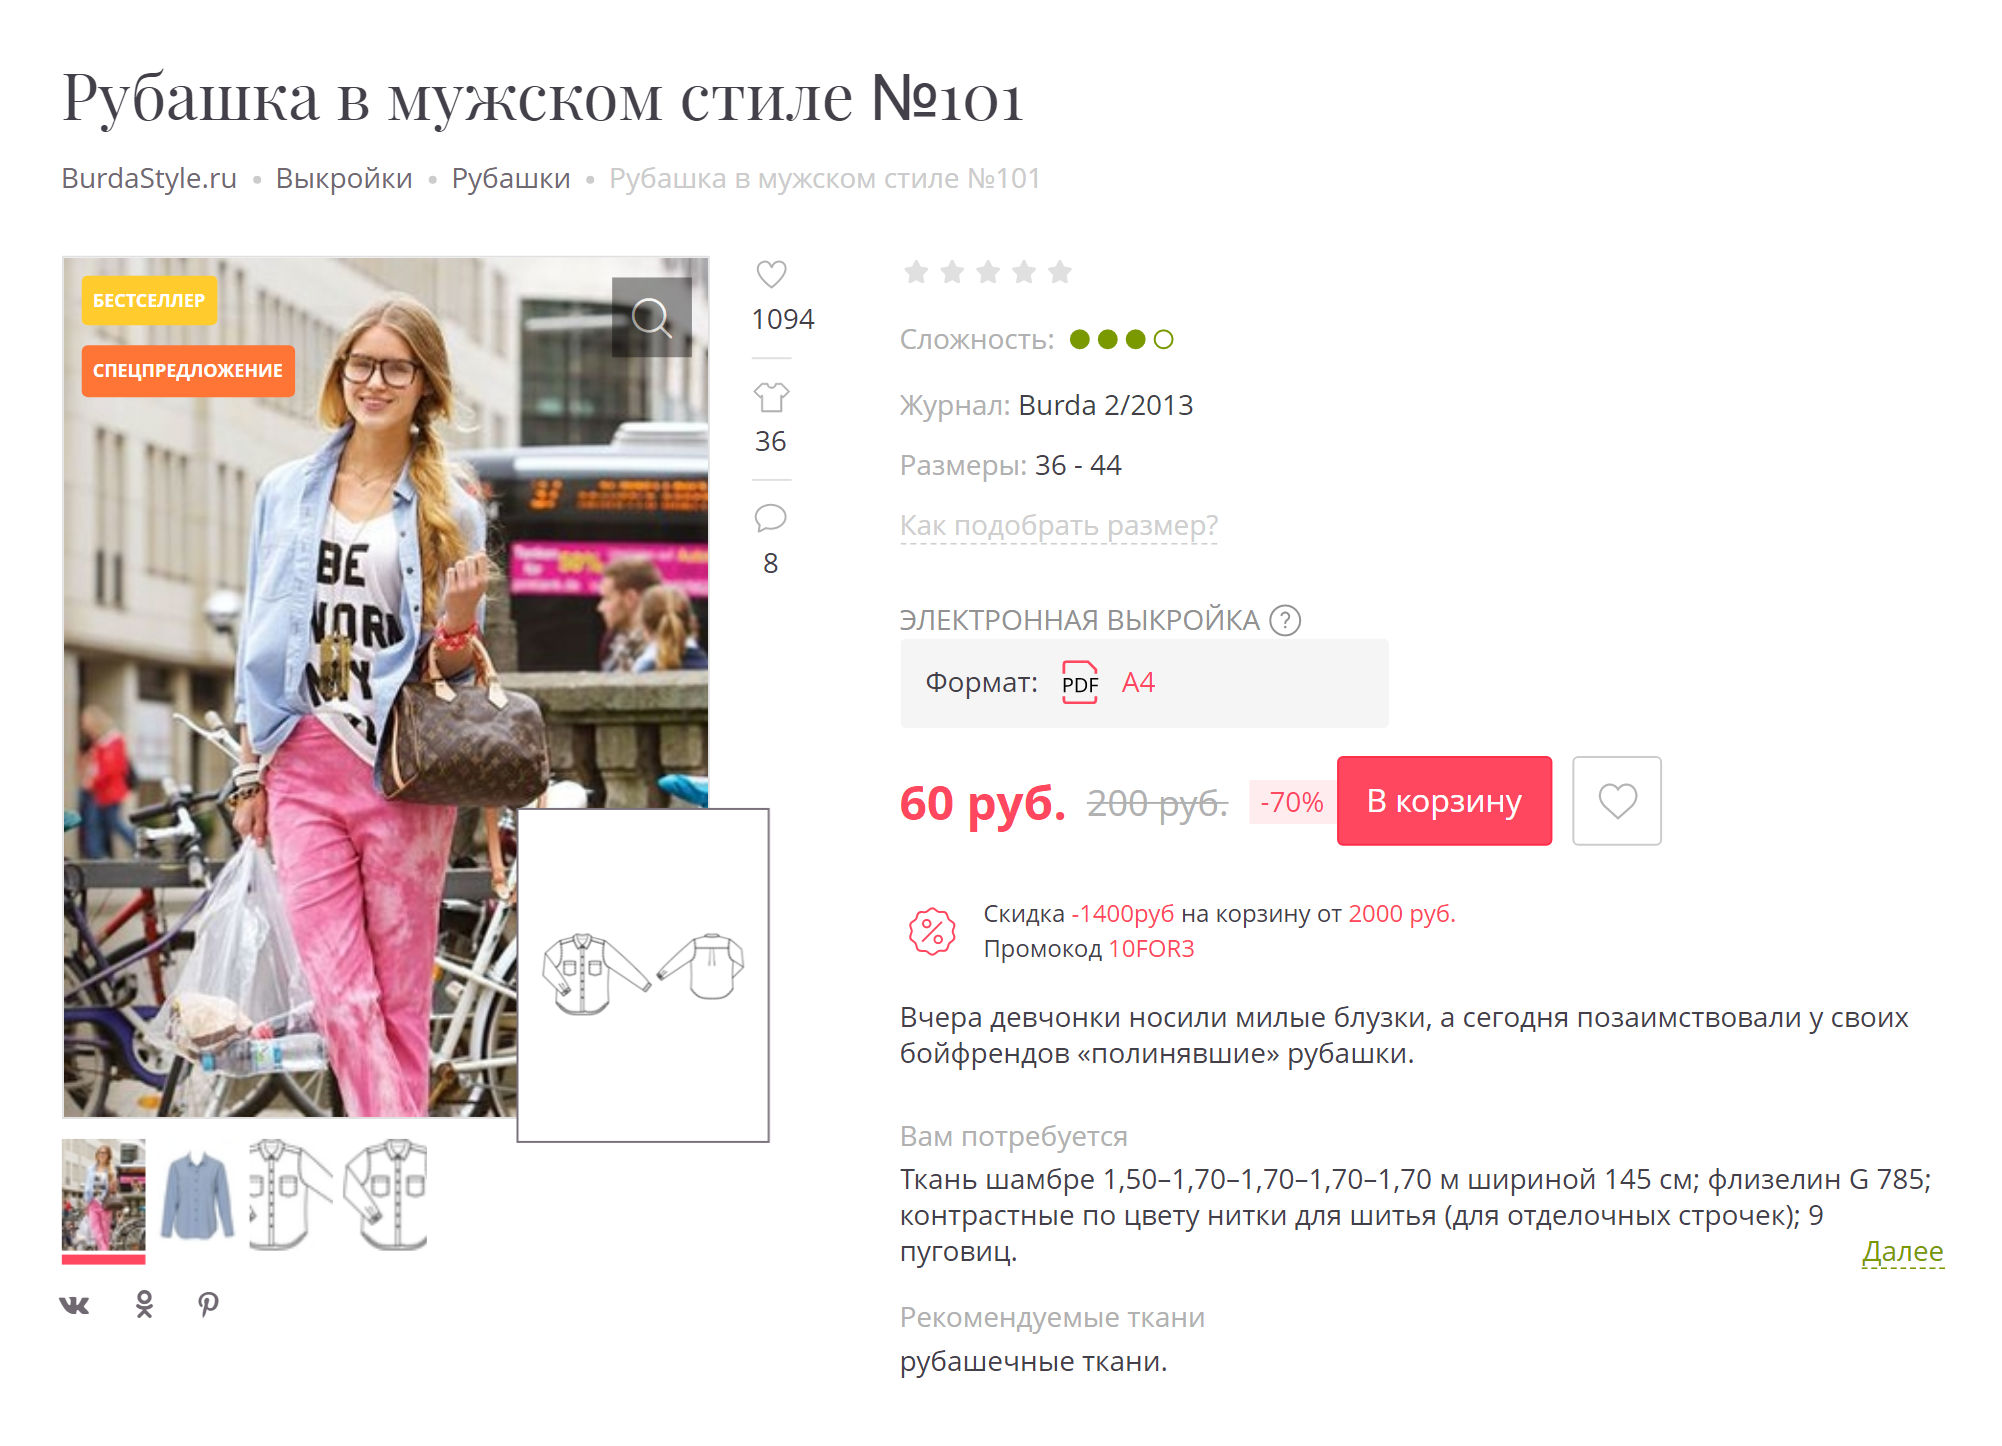 Так выглядит выкройка рубашки с описанием нужного количества ткани в онлайн-журнале. Источник: burdastyle.ru